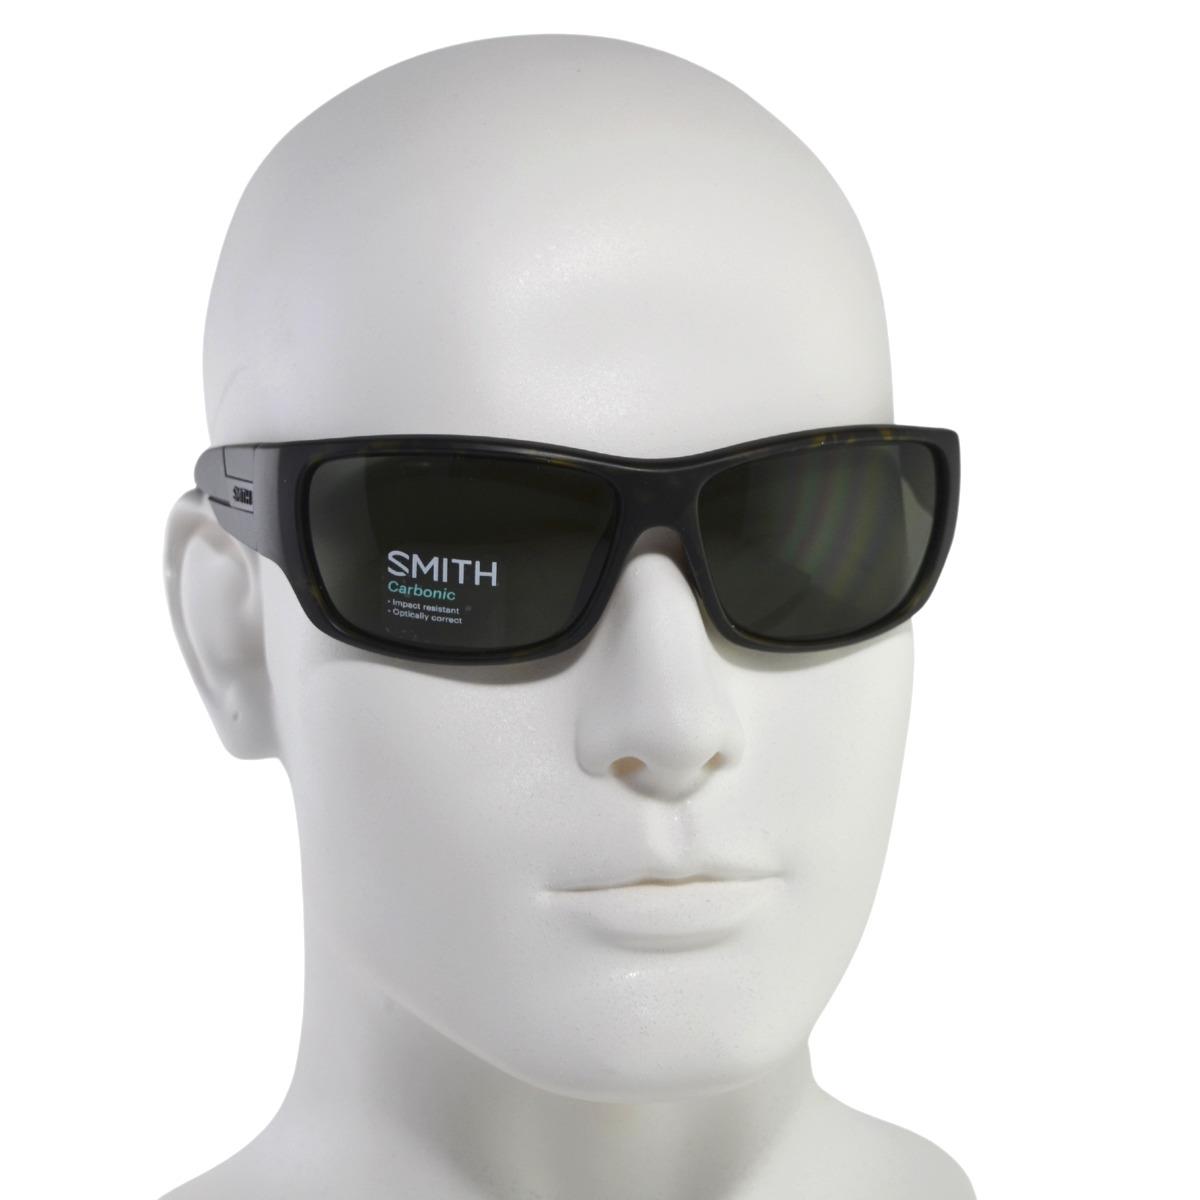 Smith Sunglasses - Frontman 04YH/PX - Matte Camo/platinum - Size 64mm